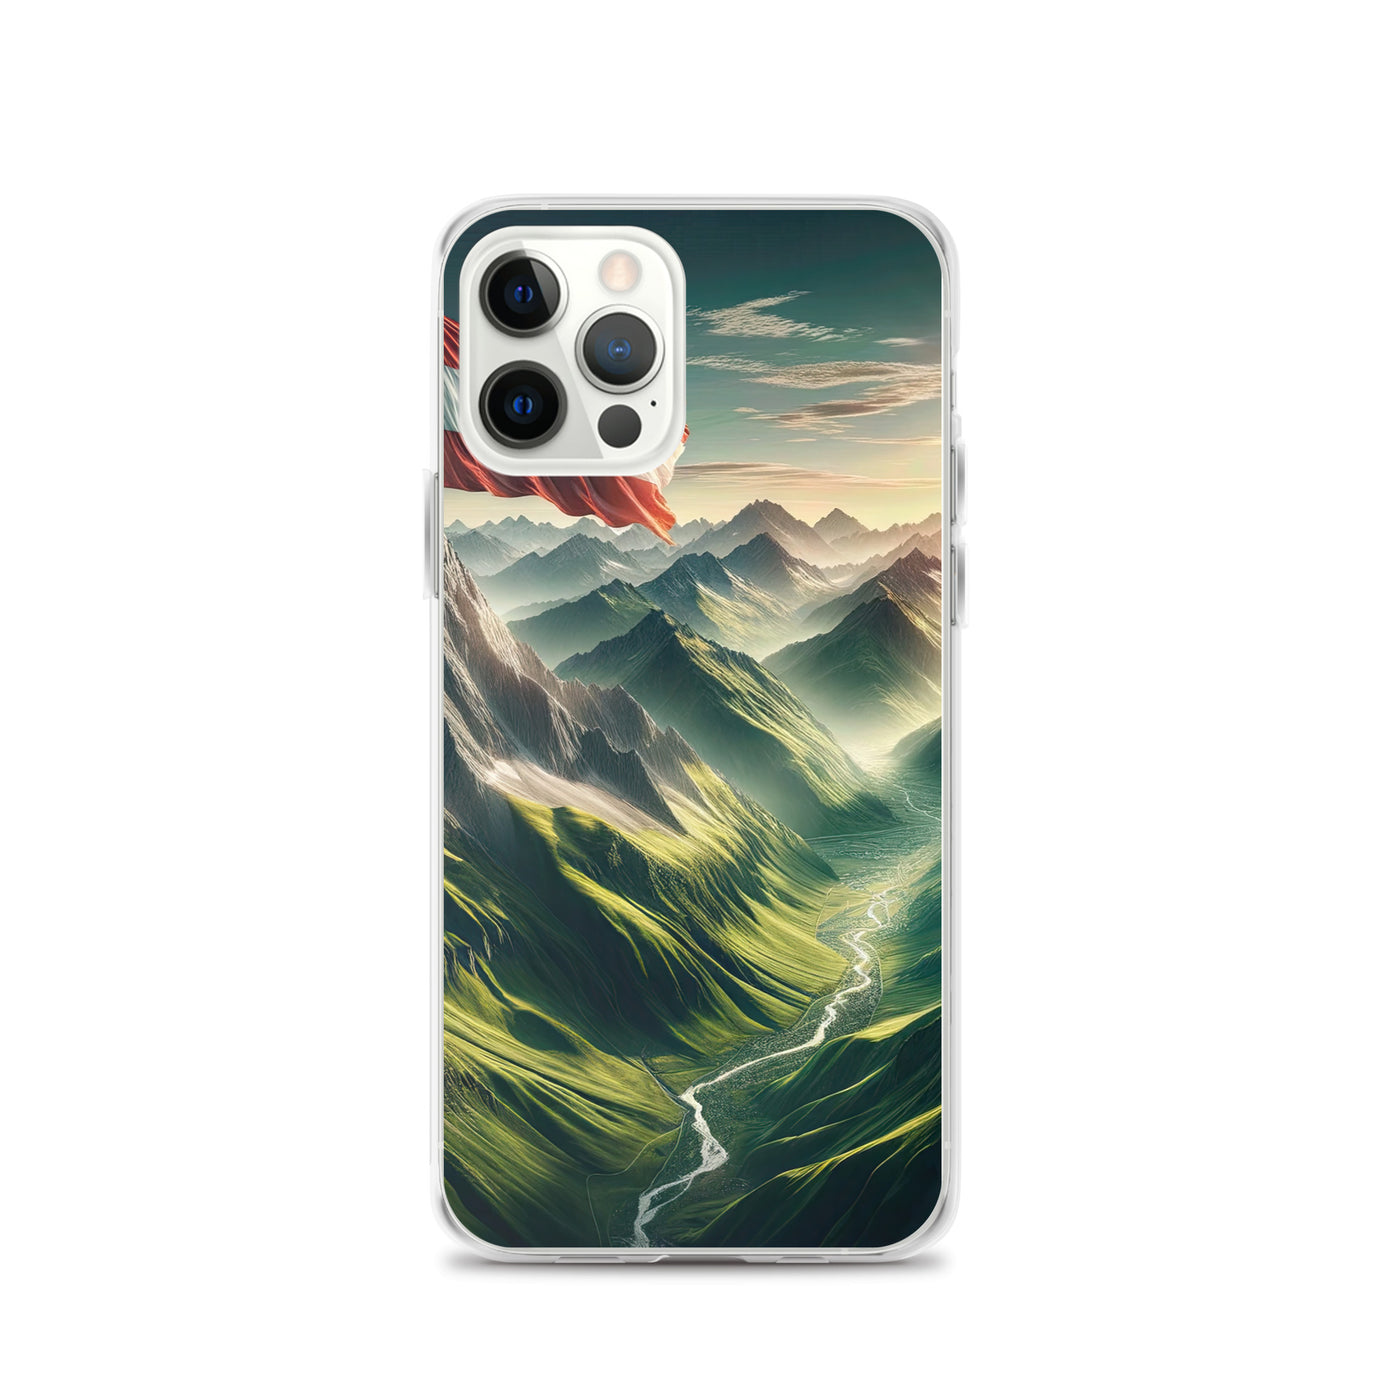 Alpen Gebirge: Fotorealistische Bergfläche mit Österreichischer Flagge - iPhone Schutzhülle (durchsichtig) berge xxx yyy zzz iPhone 12 Pro